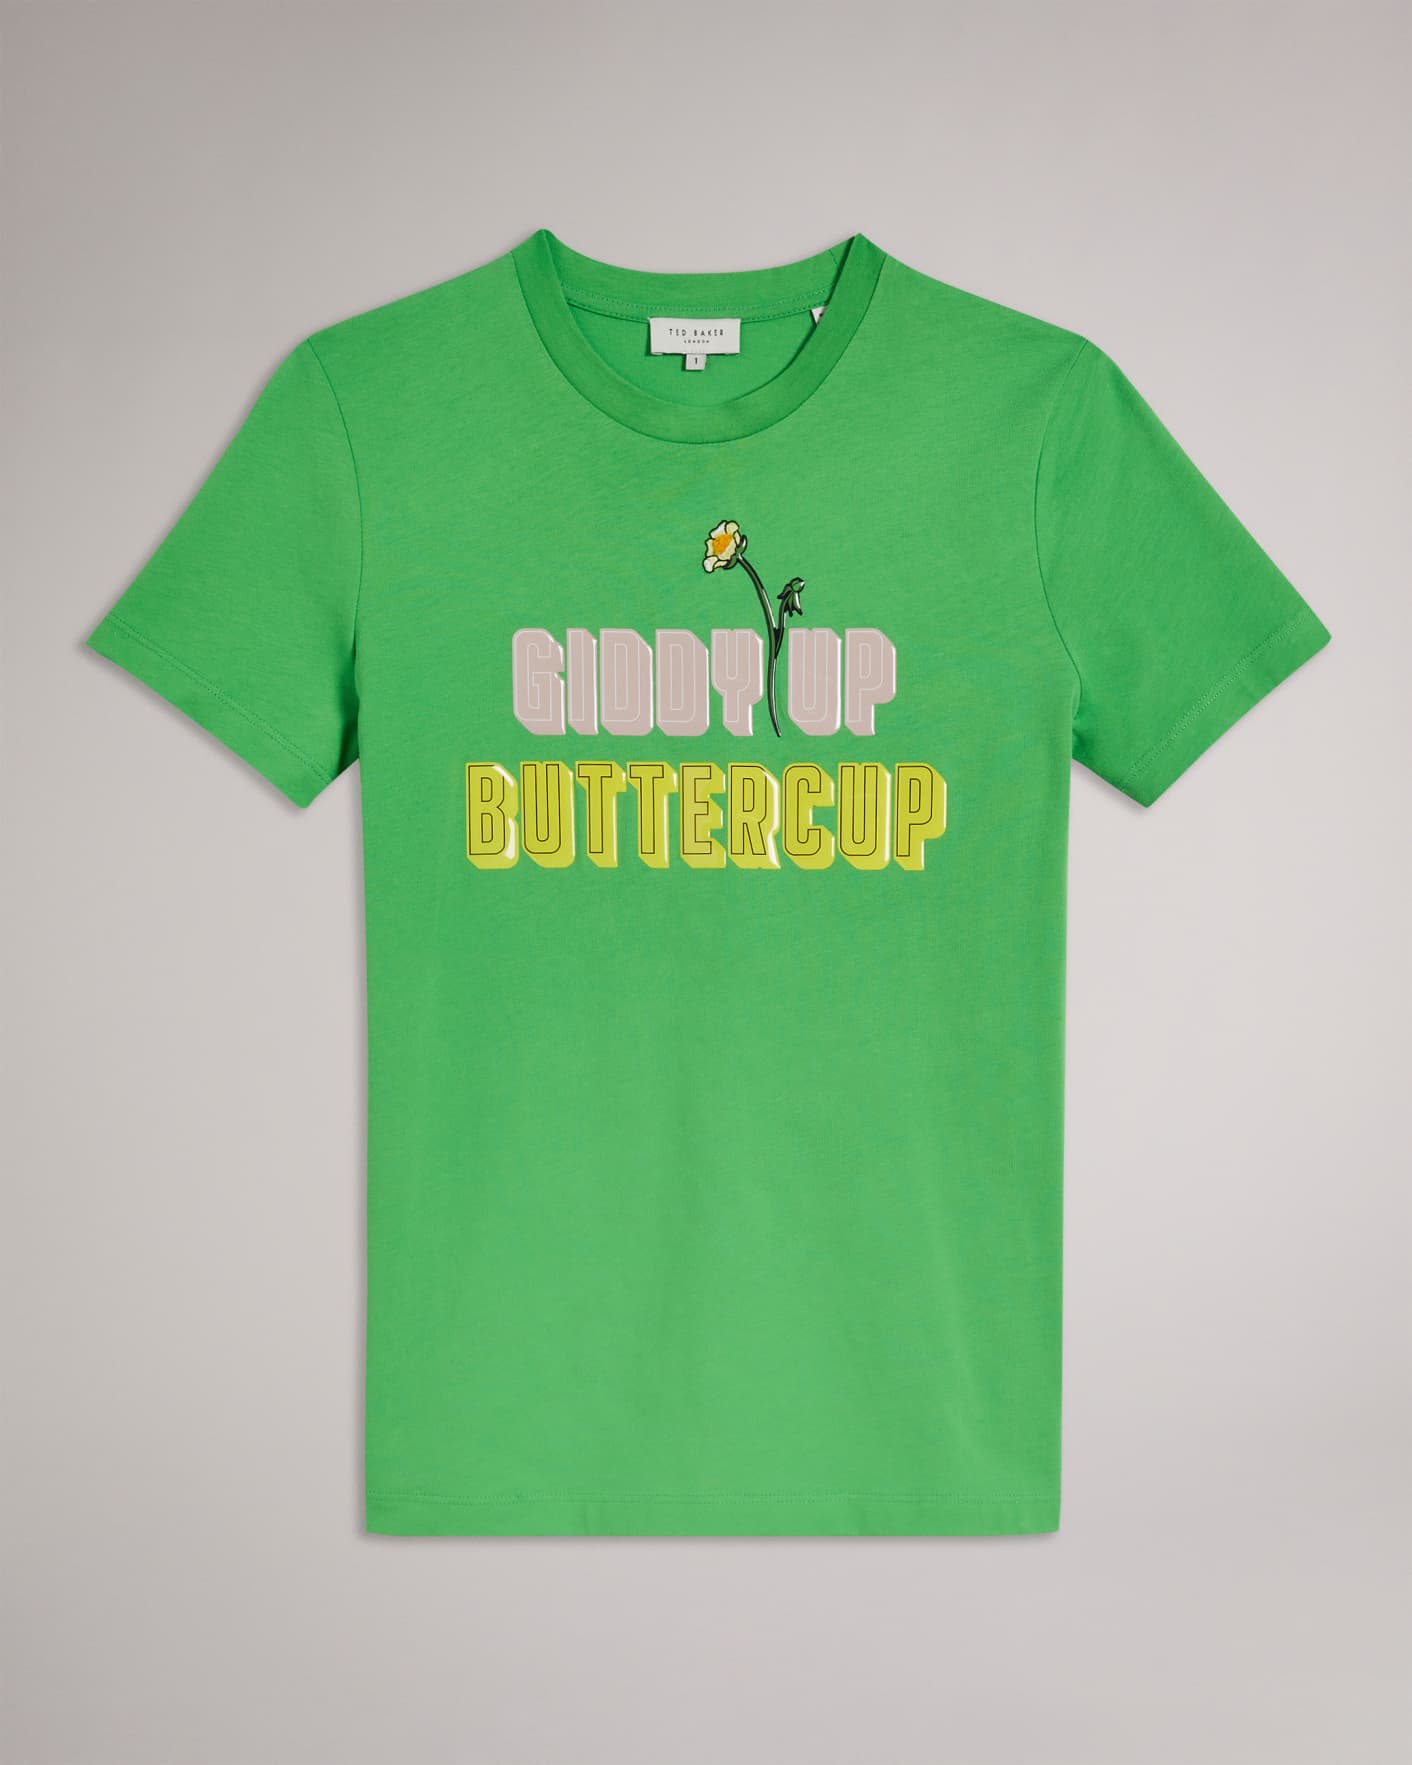 Vert Tee-shirt Giddy Up Buttercup Ted Baker